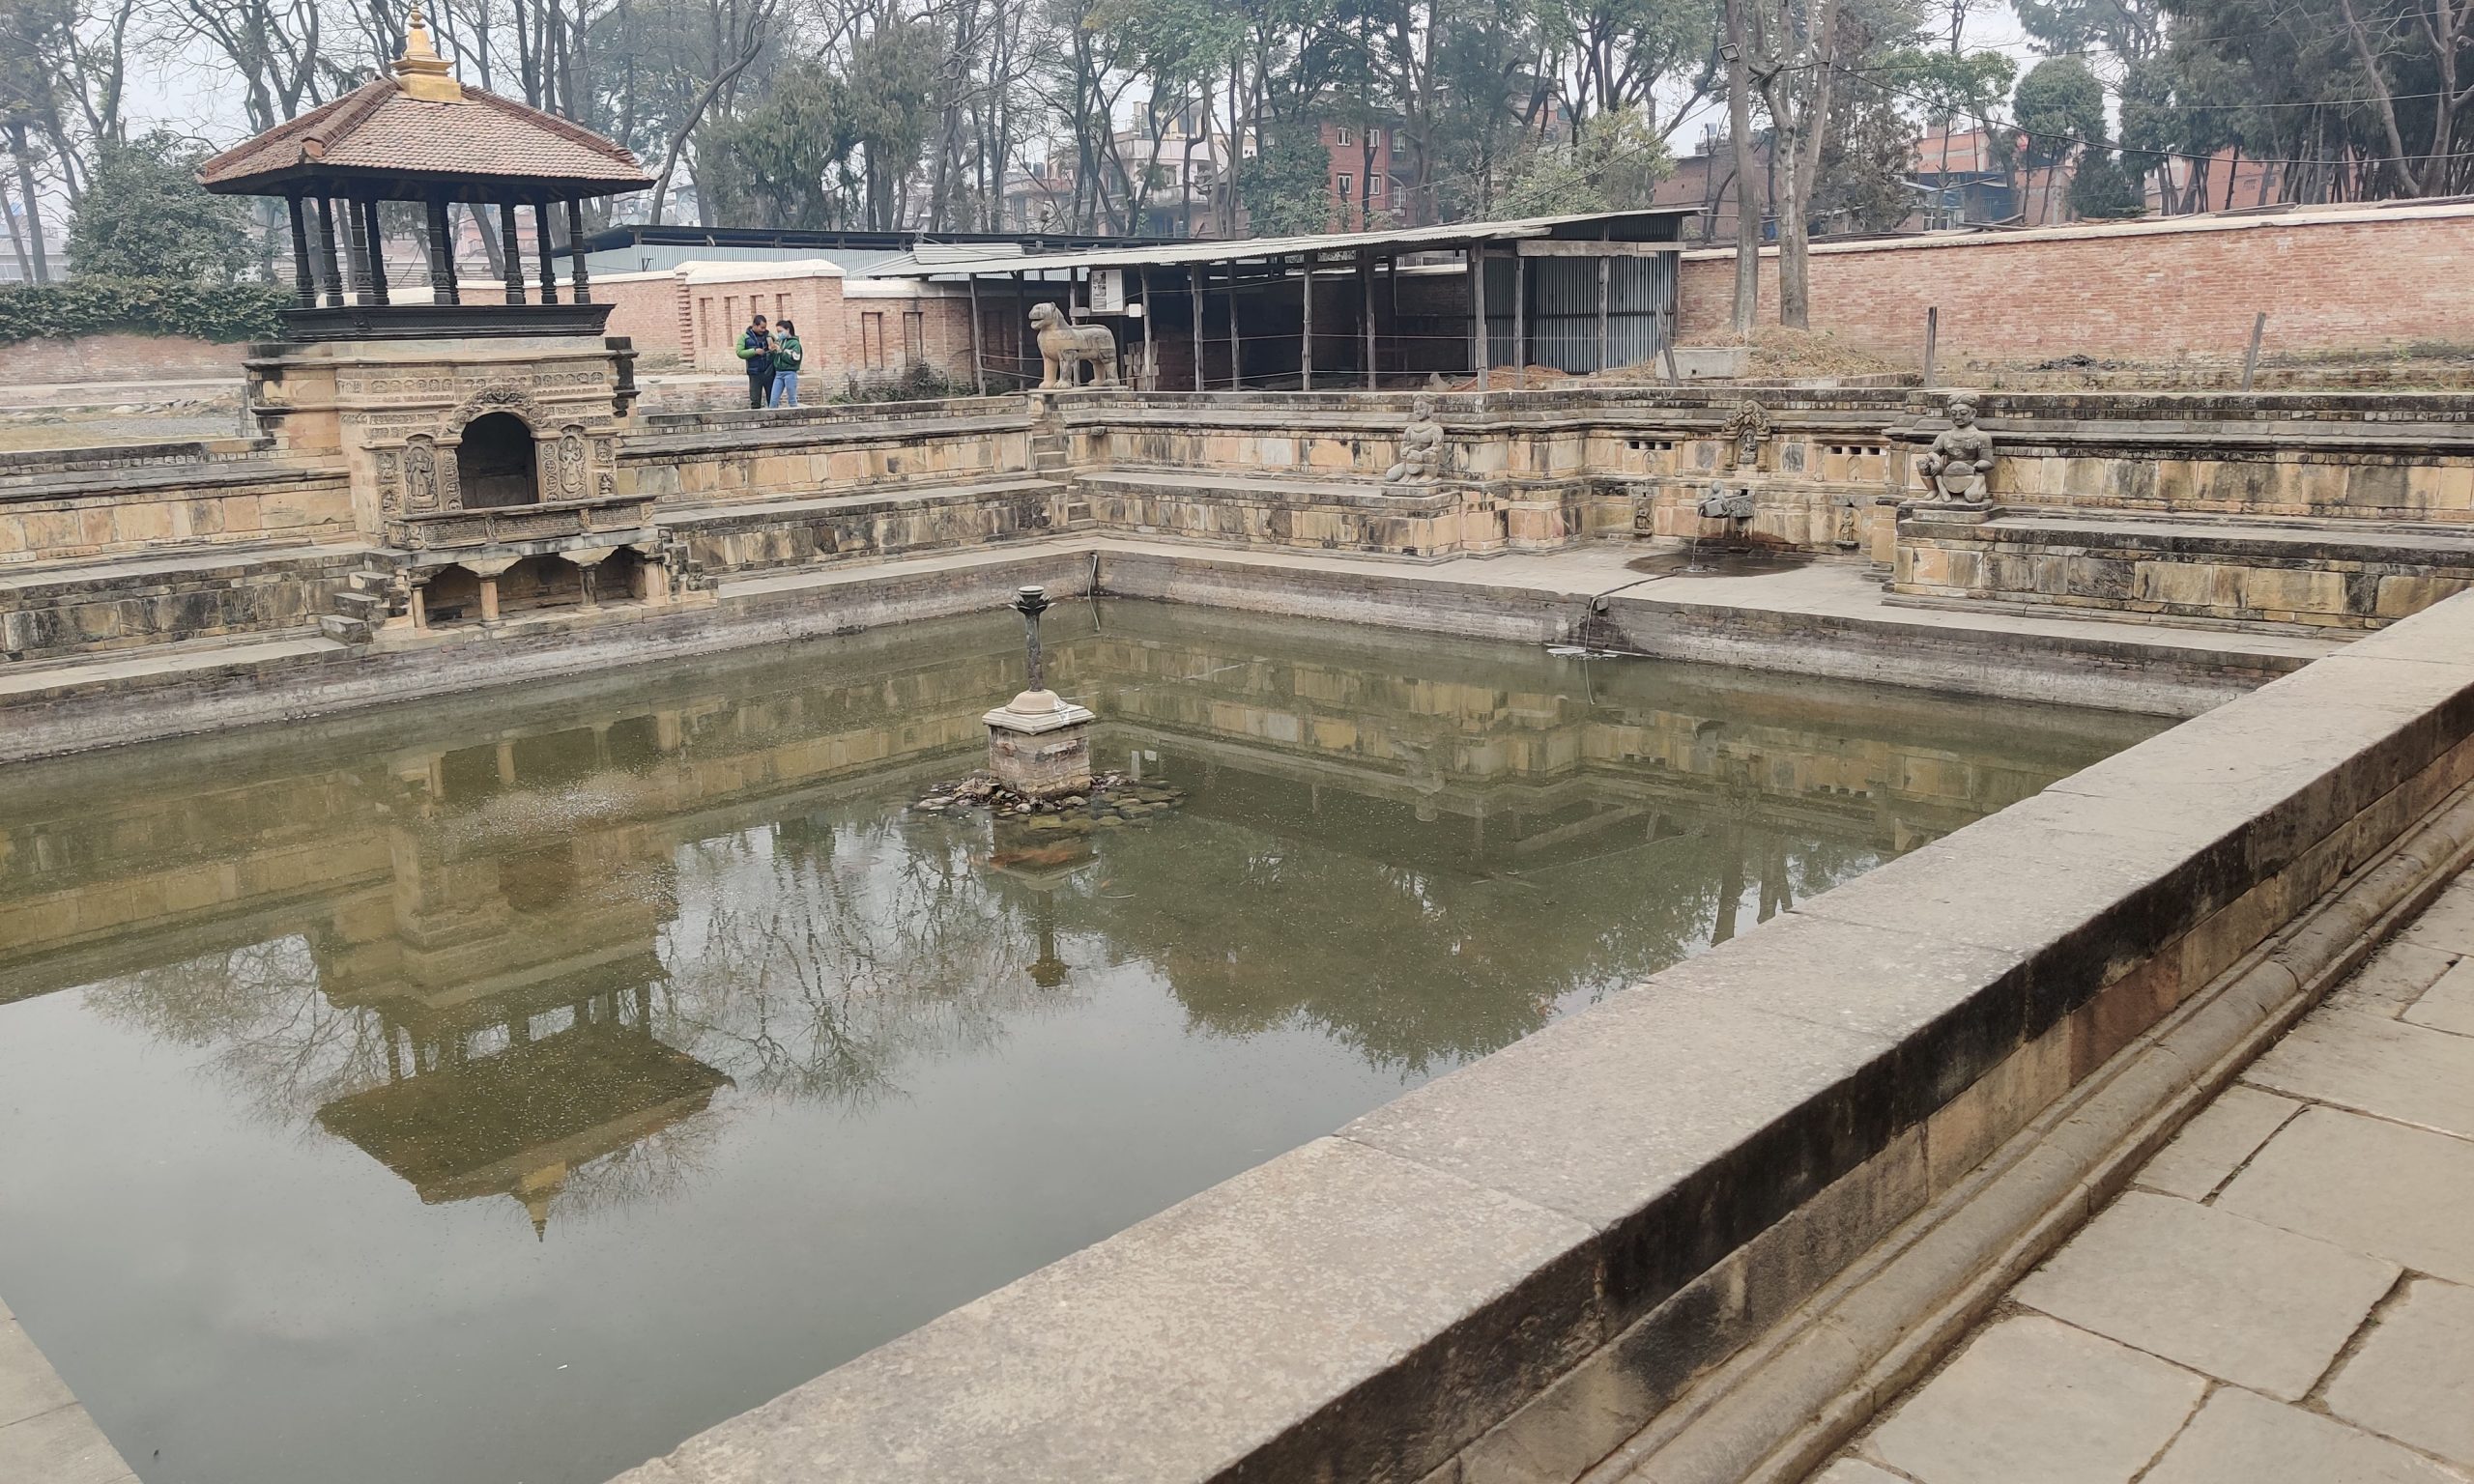 Bhandarkhal Pokhari at Patan Museum ponds in Lalitpur